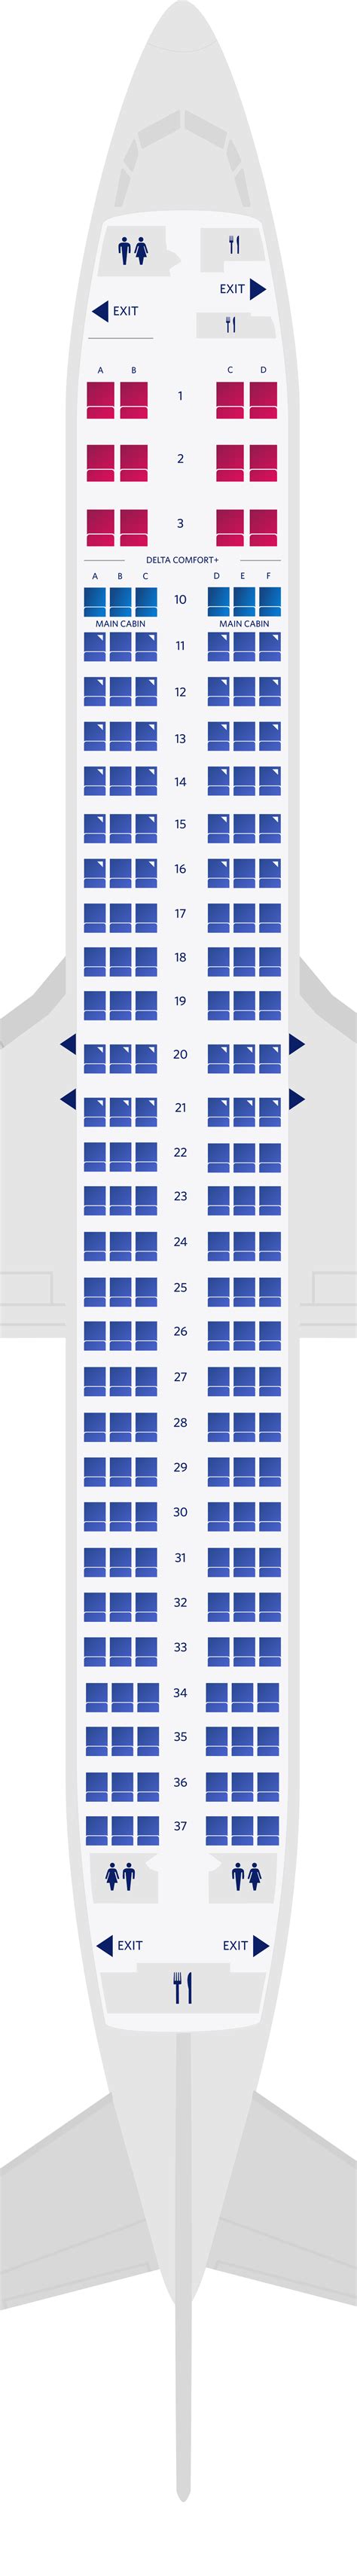 delta boeing 787-900 seat map